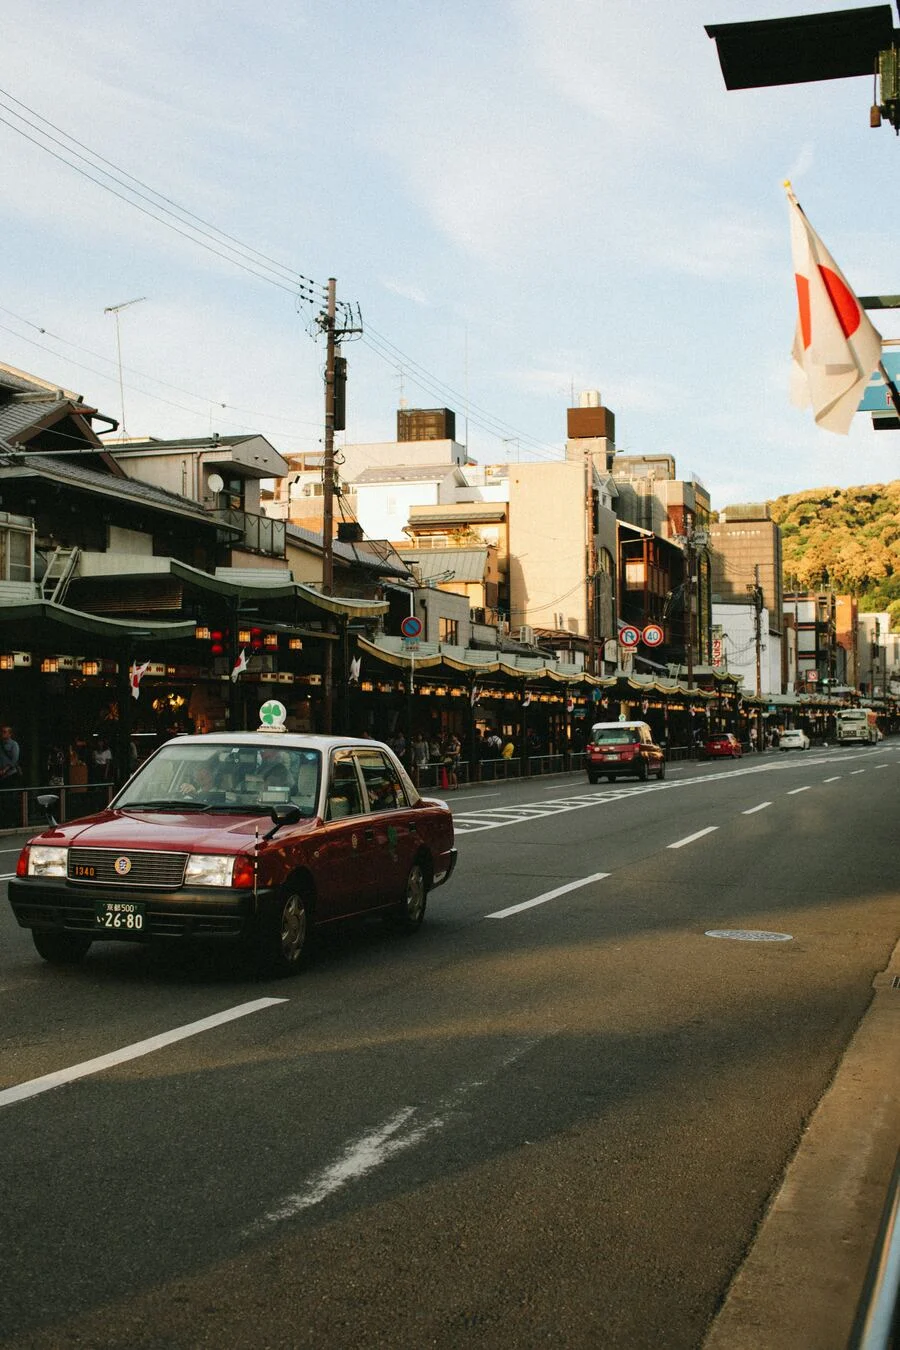 京都街道上有著幾台車輛,路中有白色的車道分割線